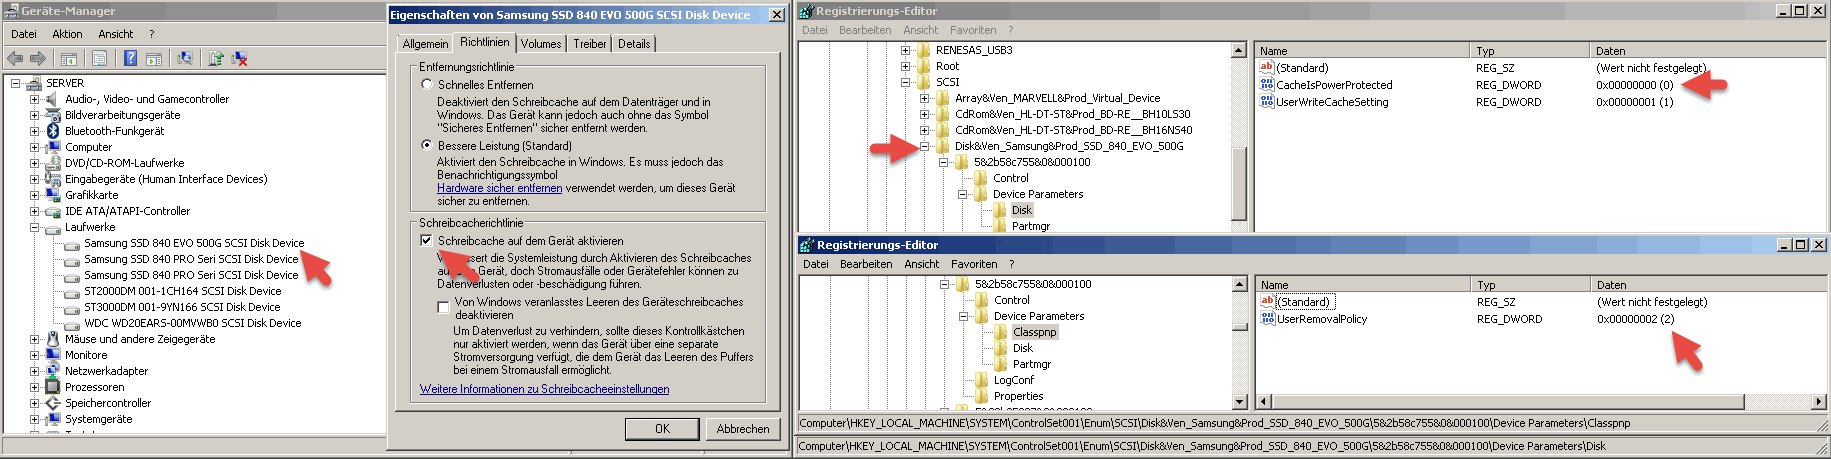 Acpi/msft0101 скачать драйвер для windows 7 x64